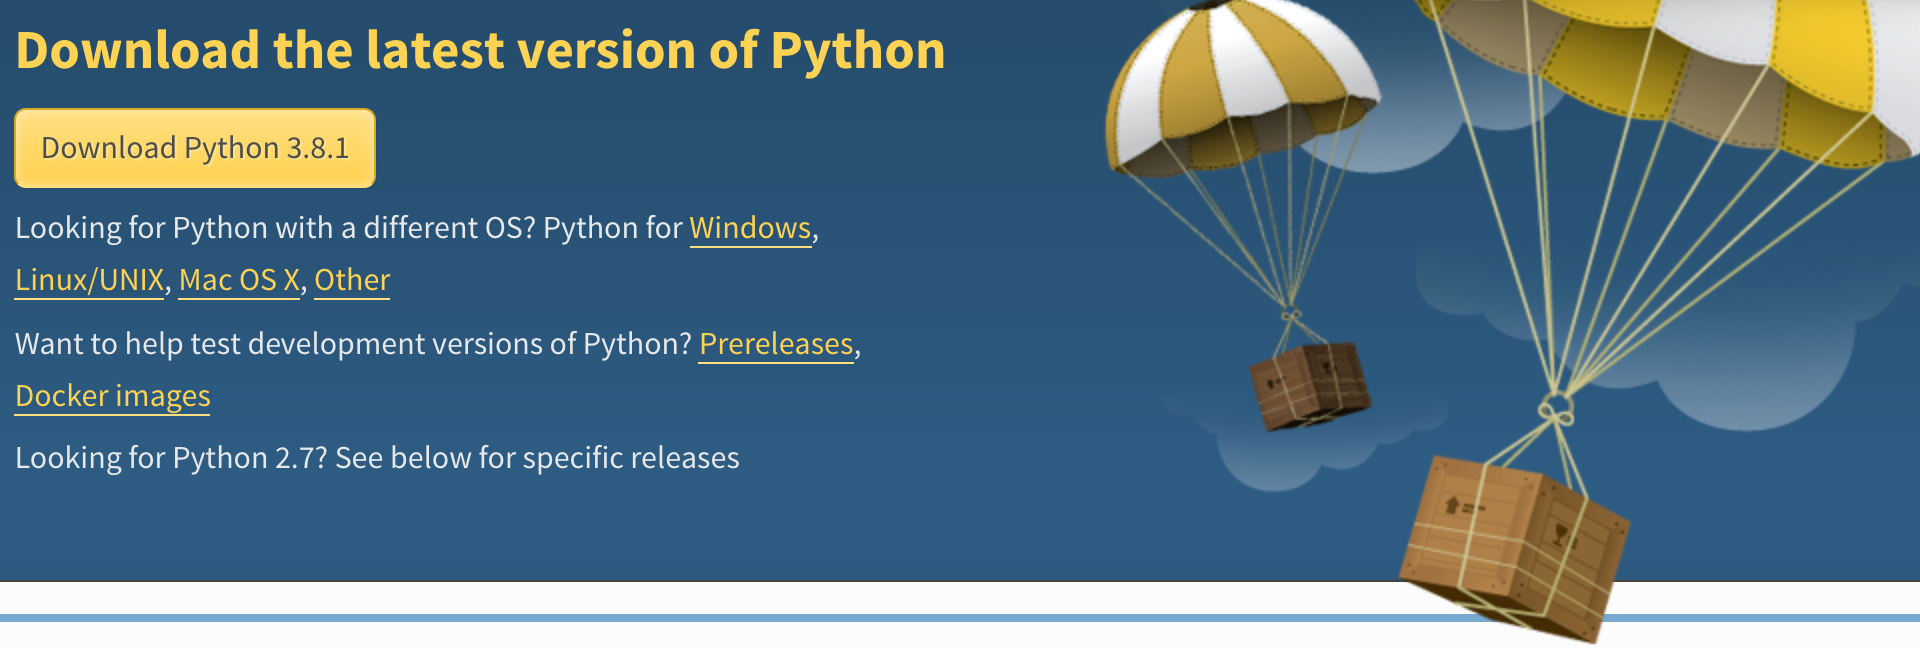 更改mac系统默认python为最新的版本